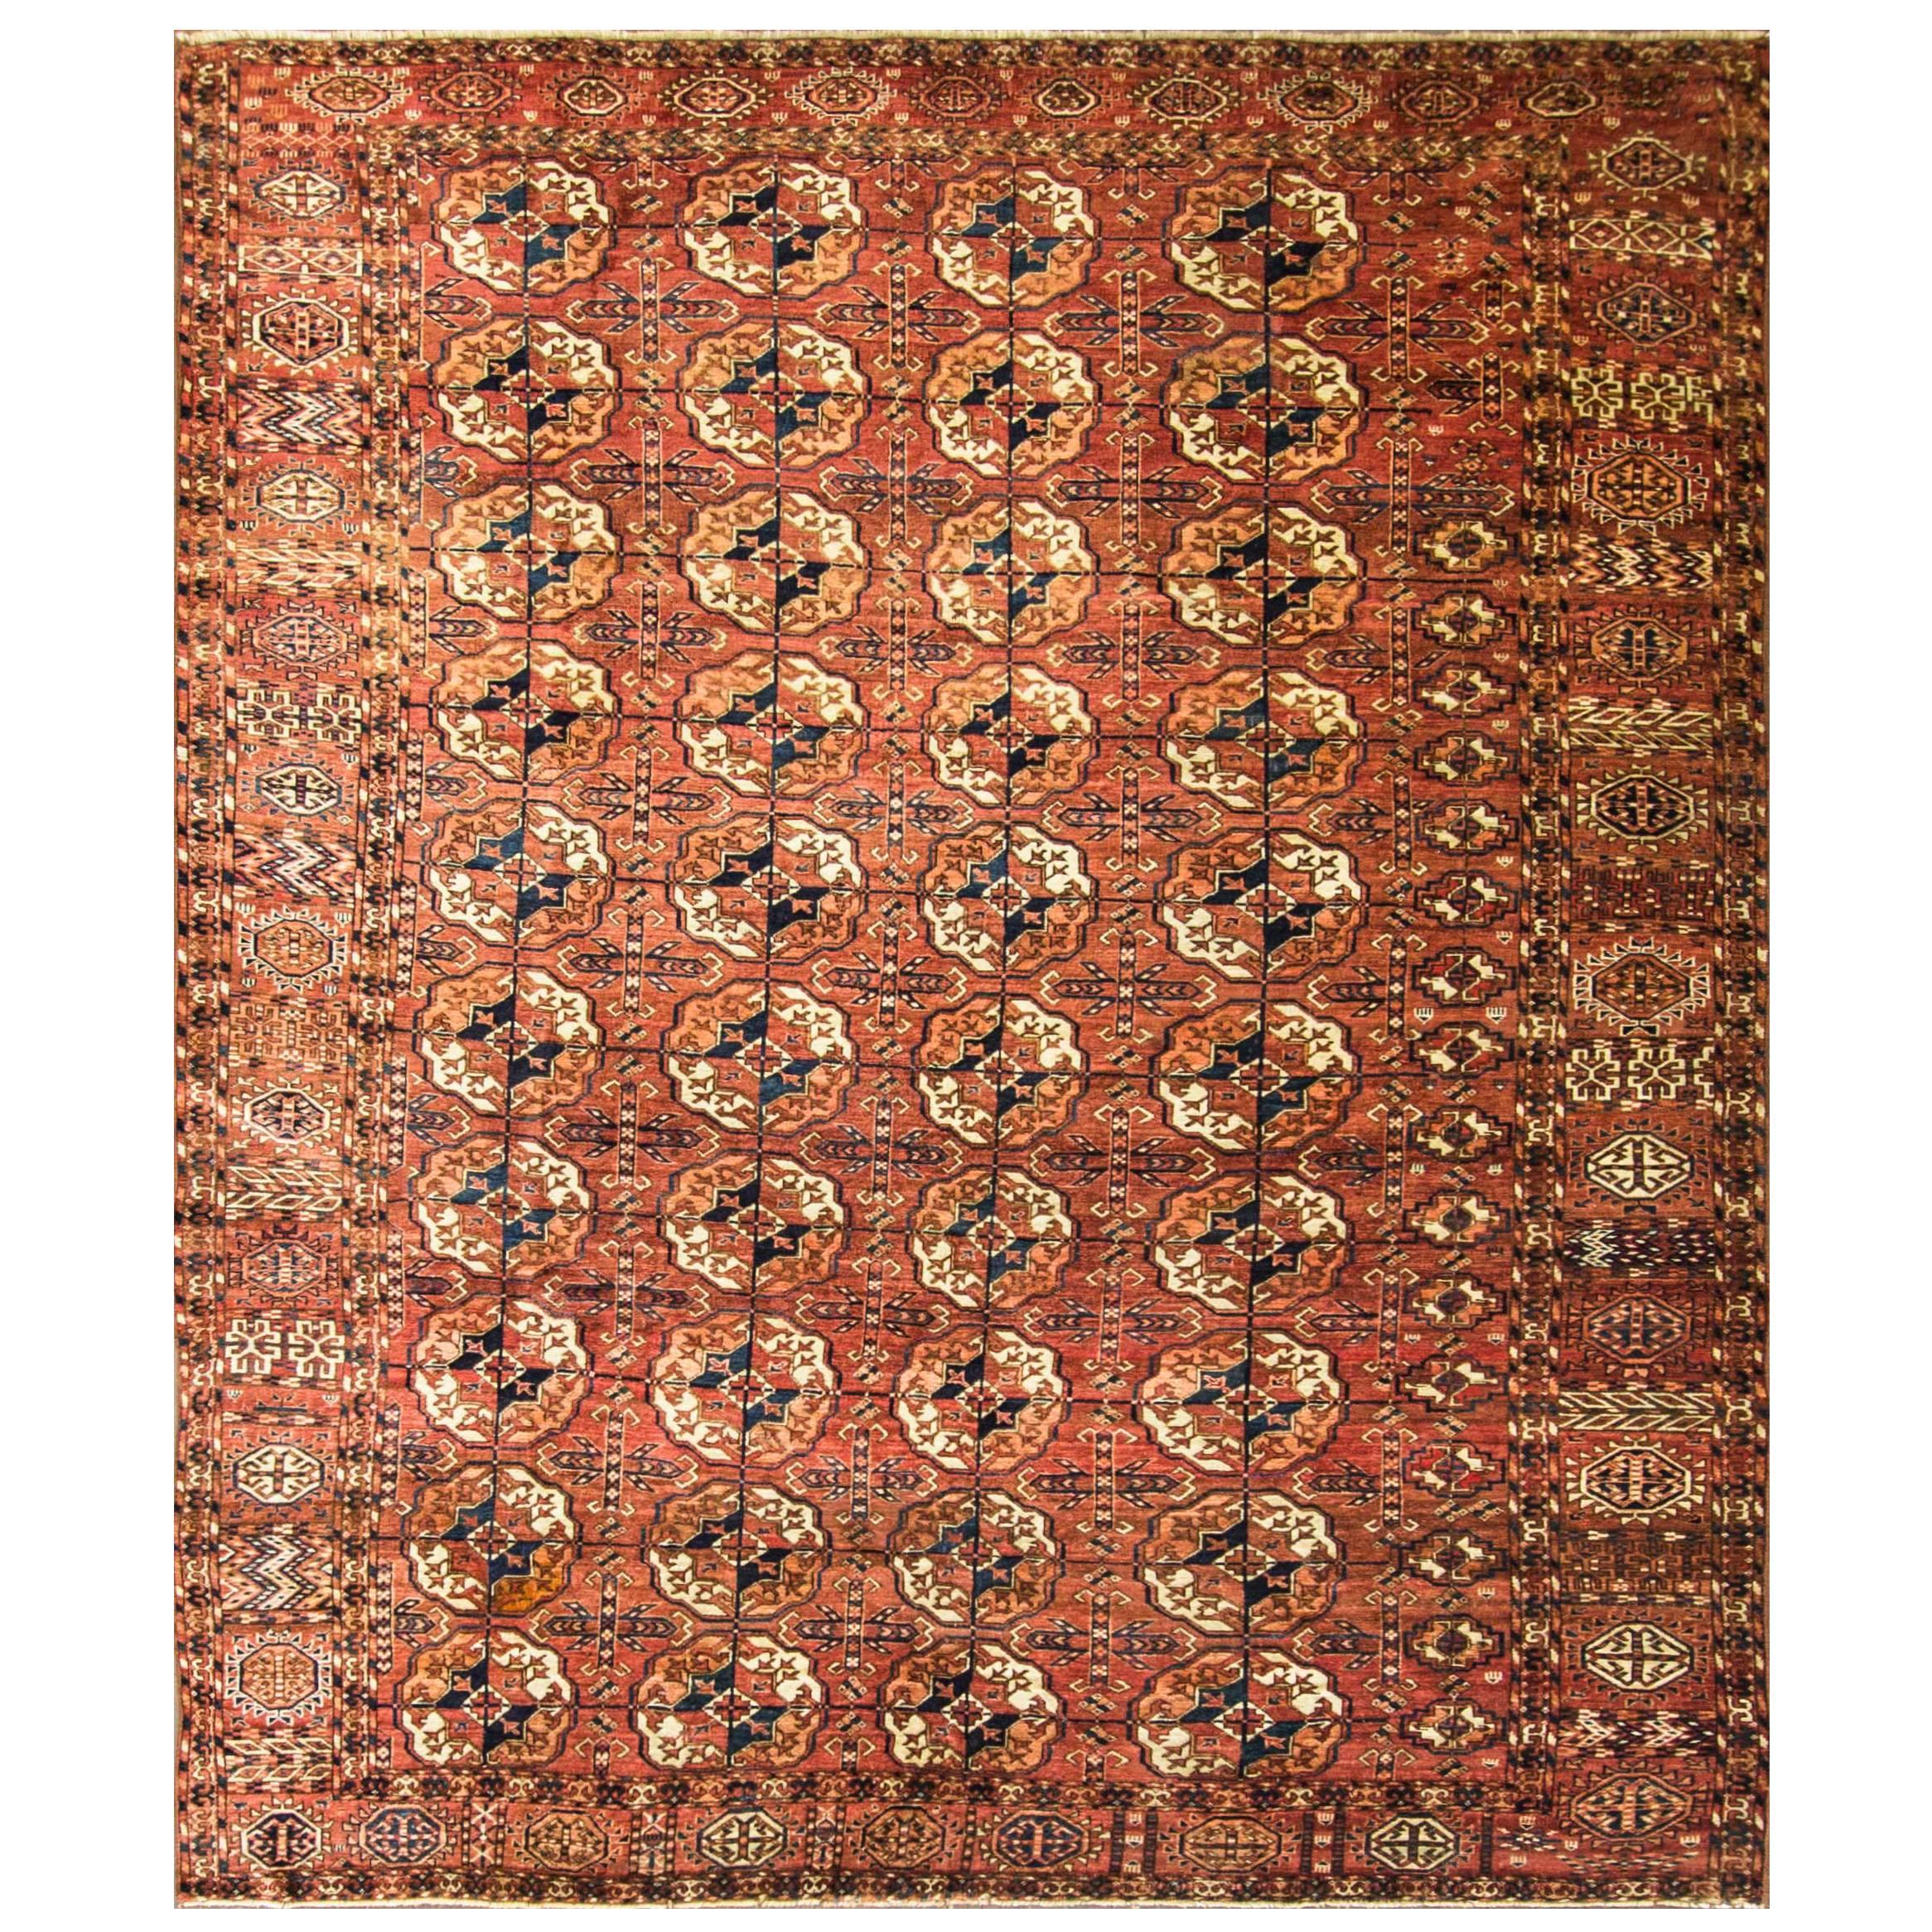 Most Unusual Turkoman Main Carpet